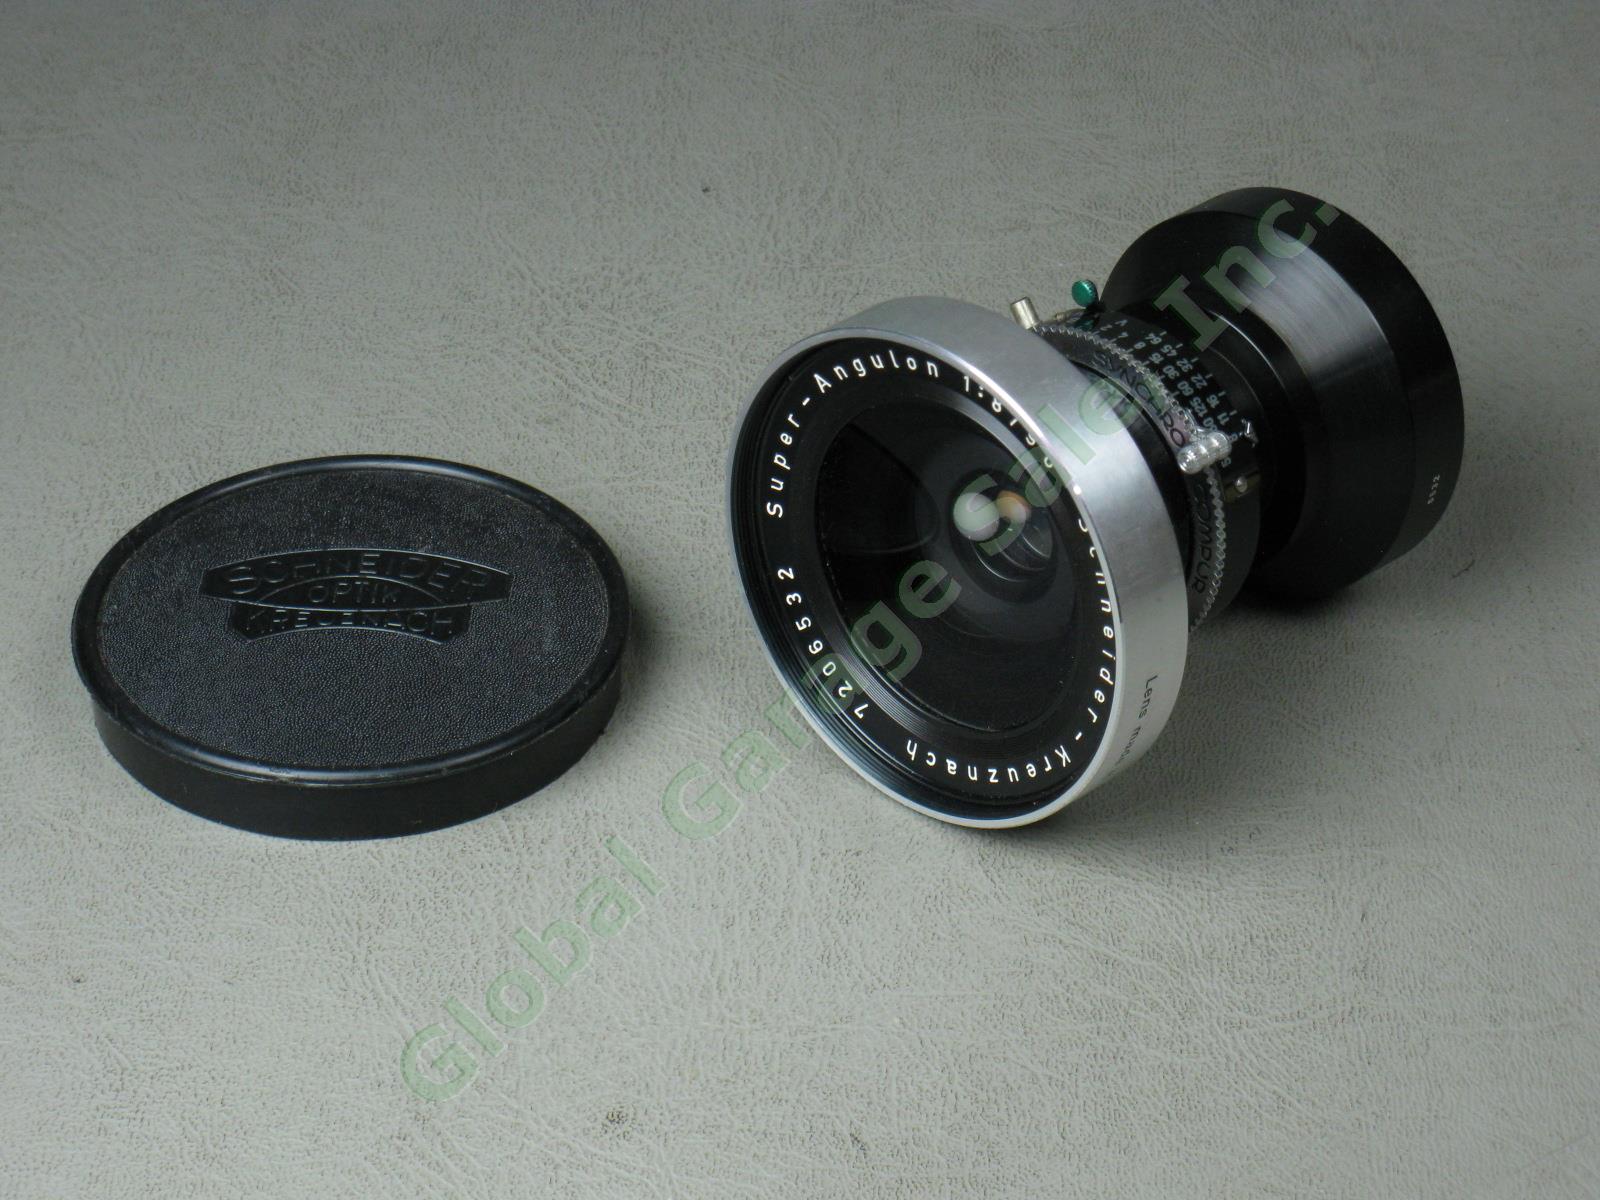 Schneider-Kreuznach Super-Angulon 1:8 f/8 90mm Camera Lens Serial #7206932 NR! 1